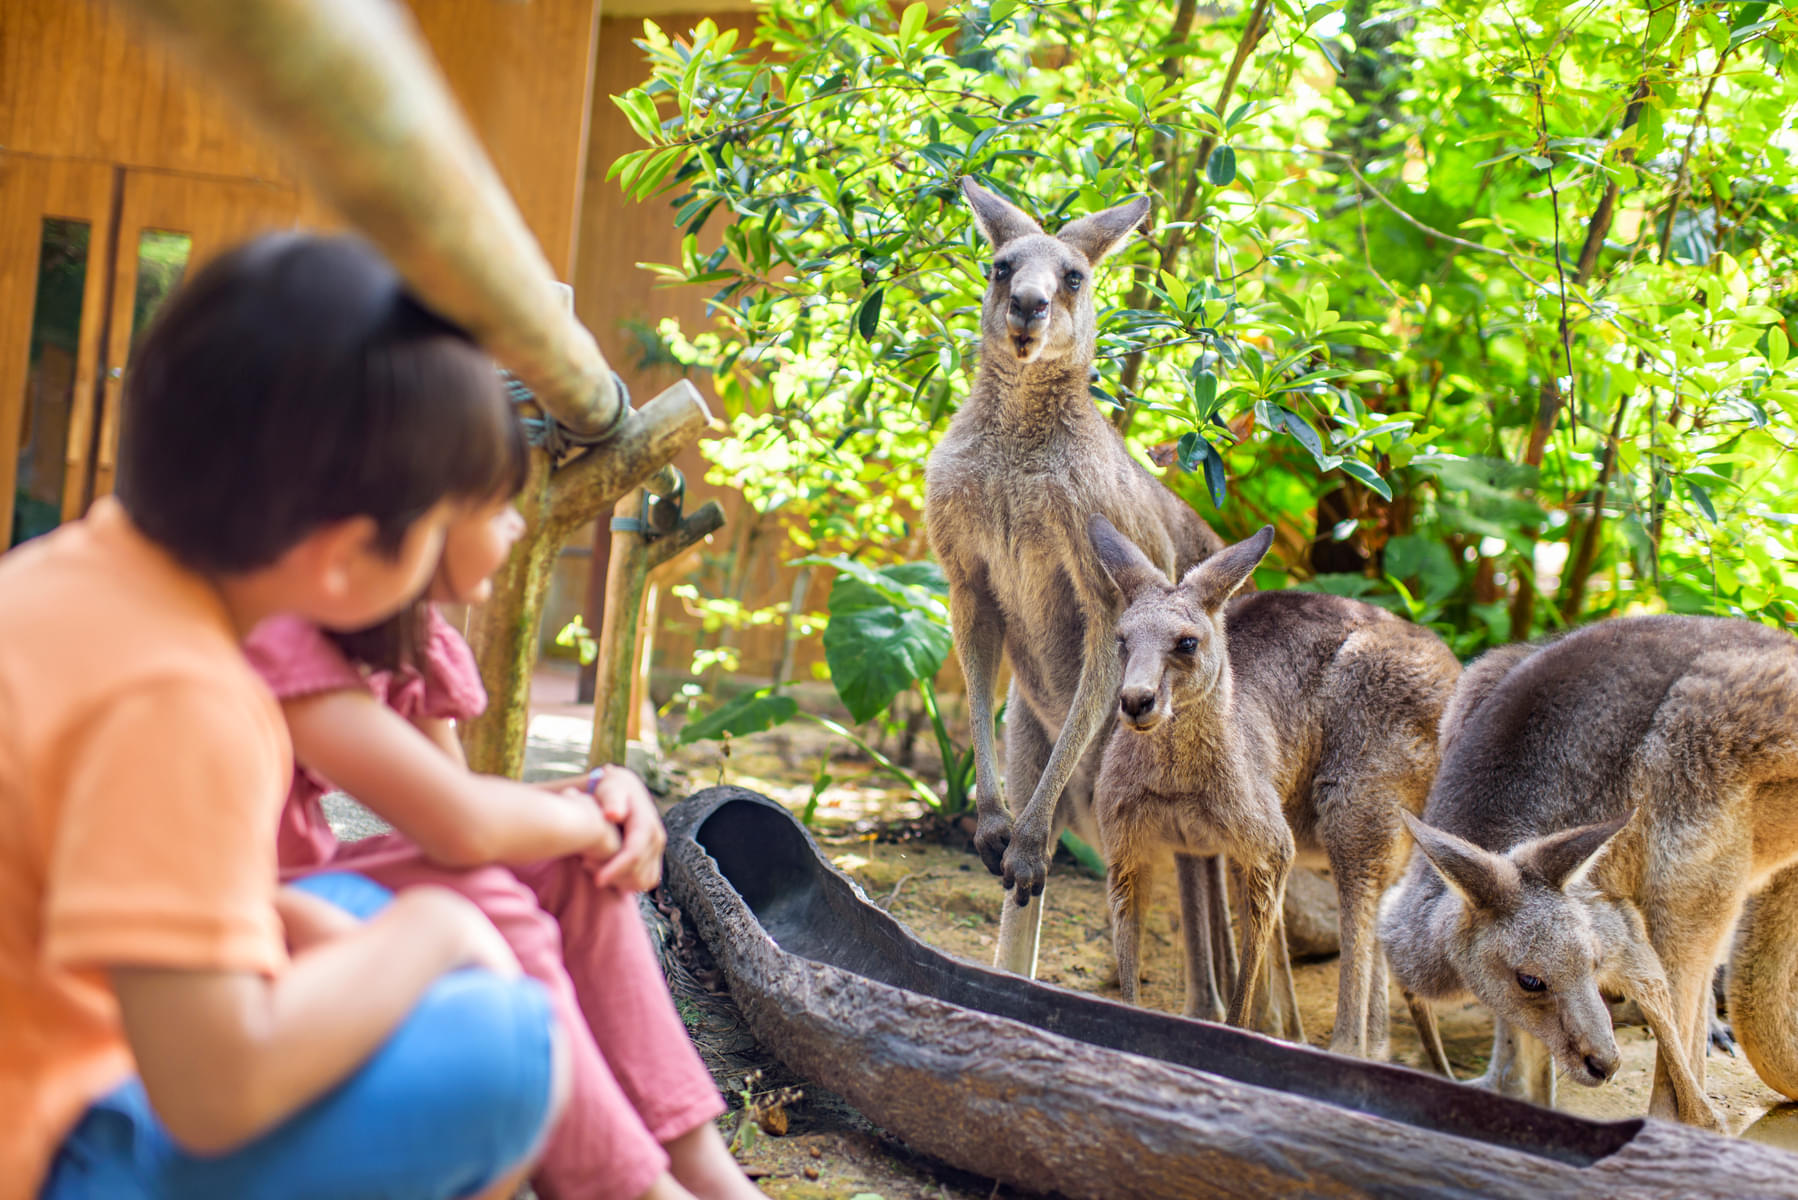 Look at free roaming kangaroos